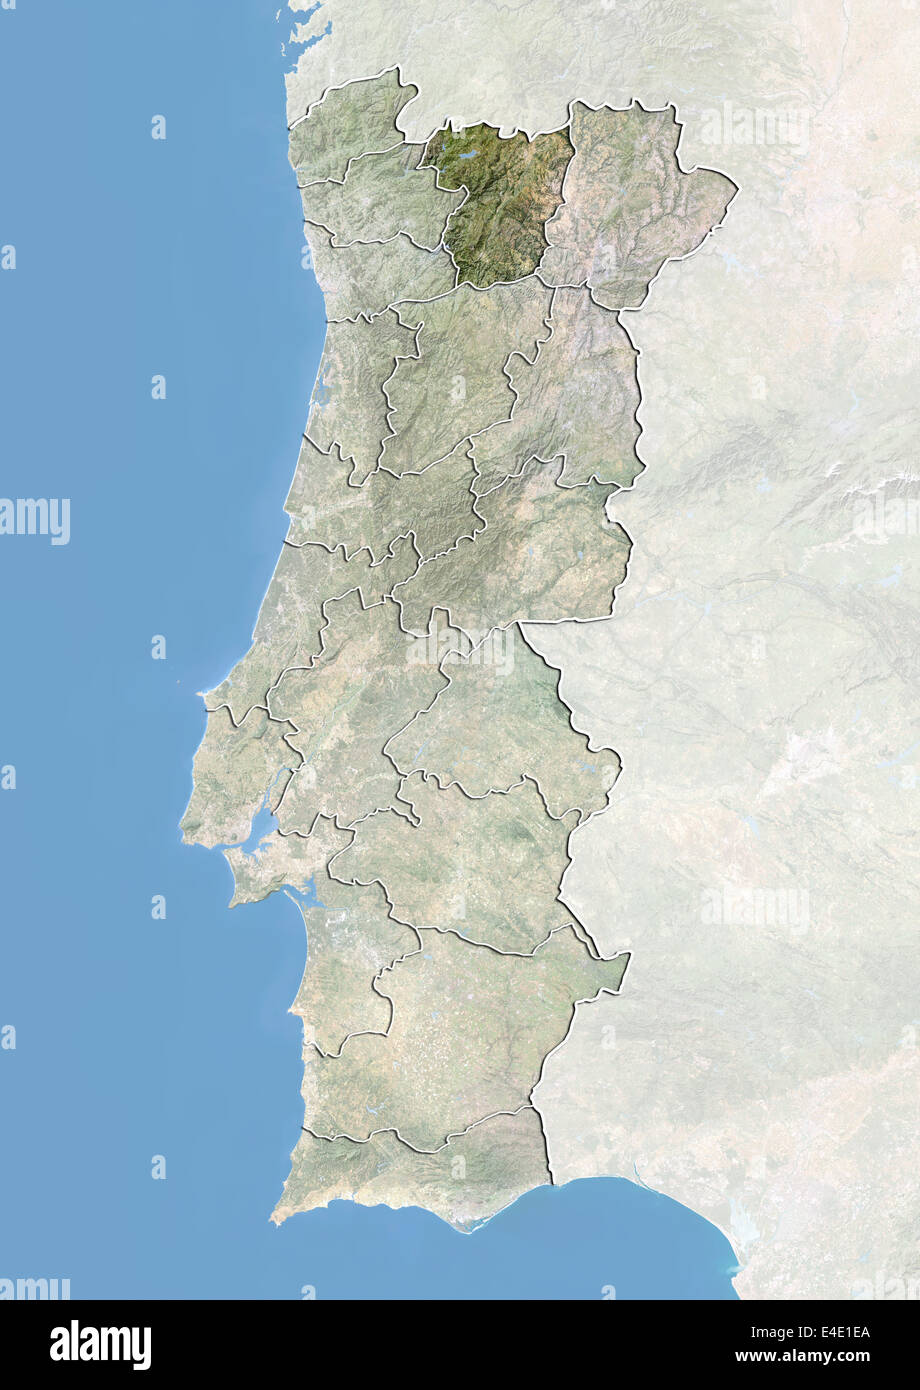 Le Portugal et le district de Vila Real, image satellite avec effet de choc Banque D'Images